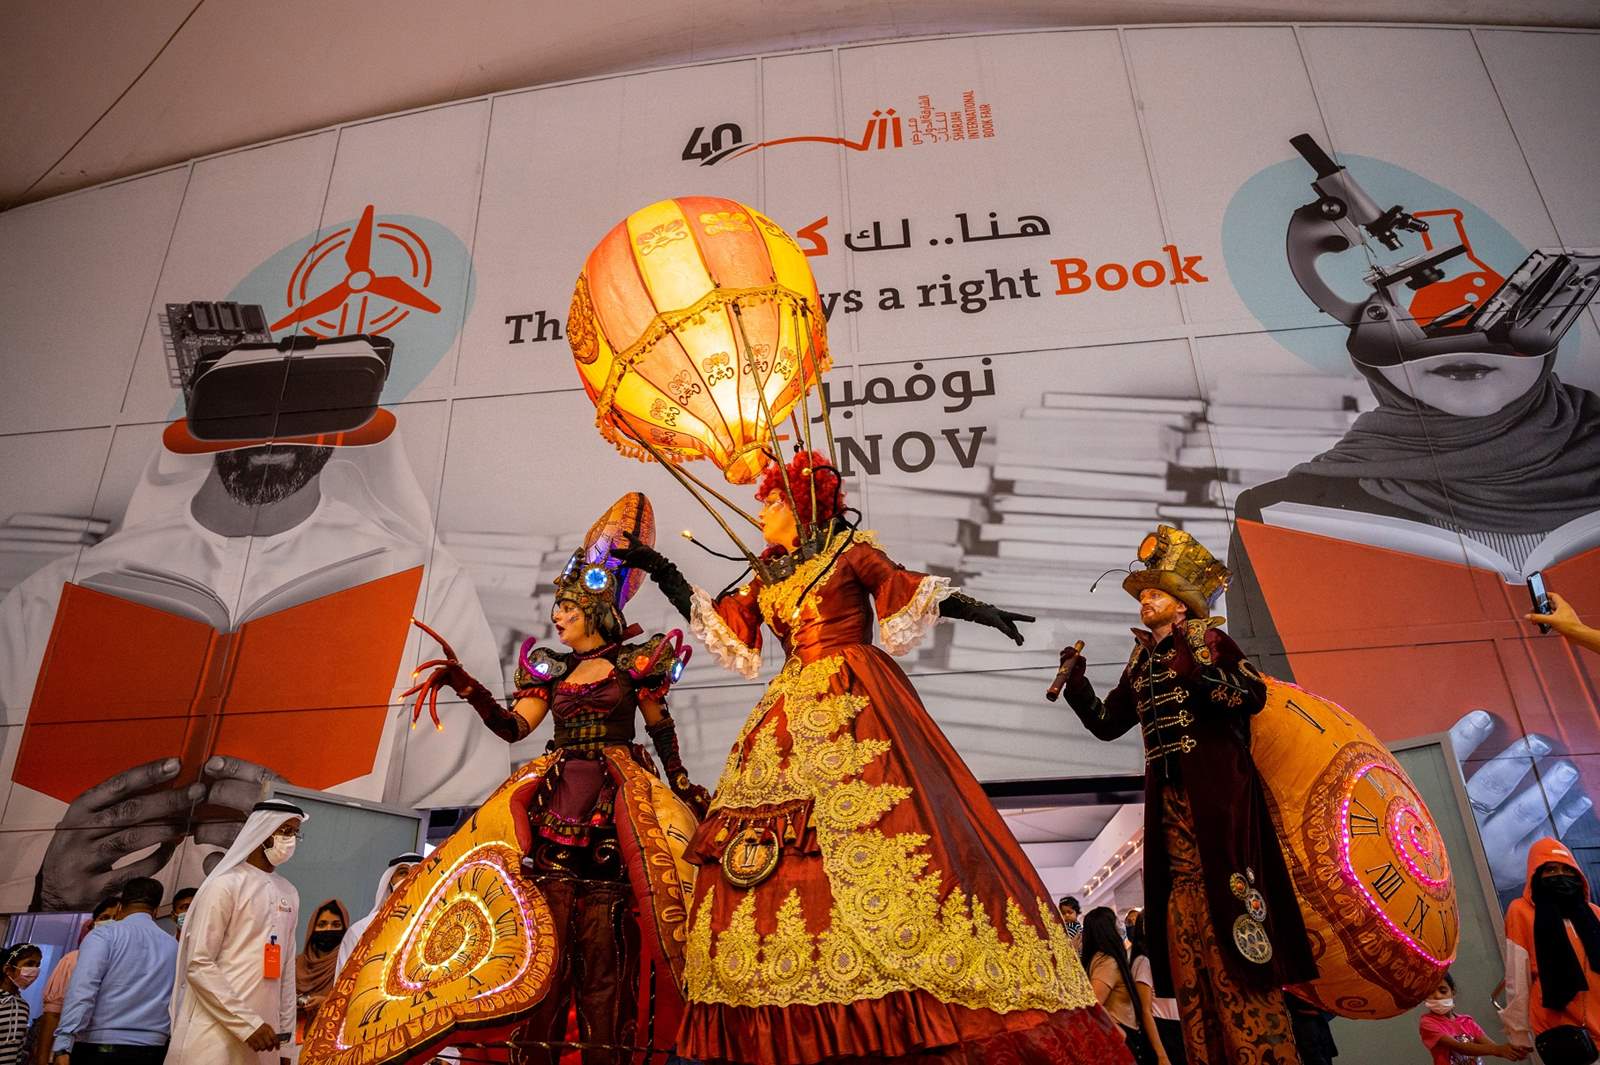 Mezinárodní knižní veletrh Sharjah 2021